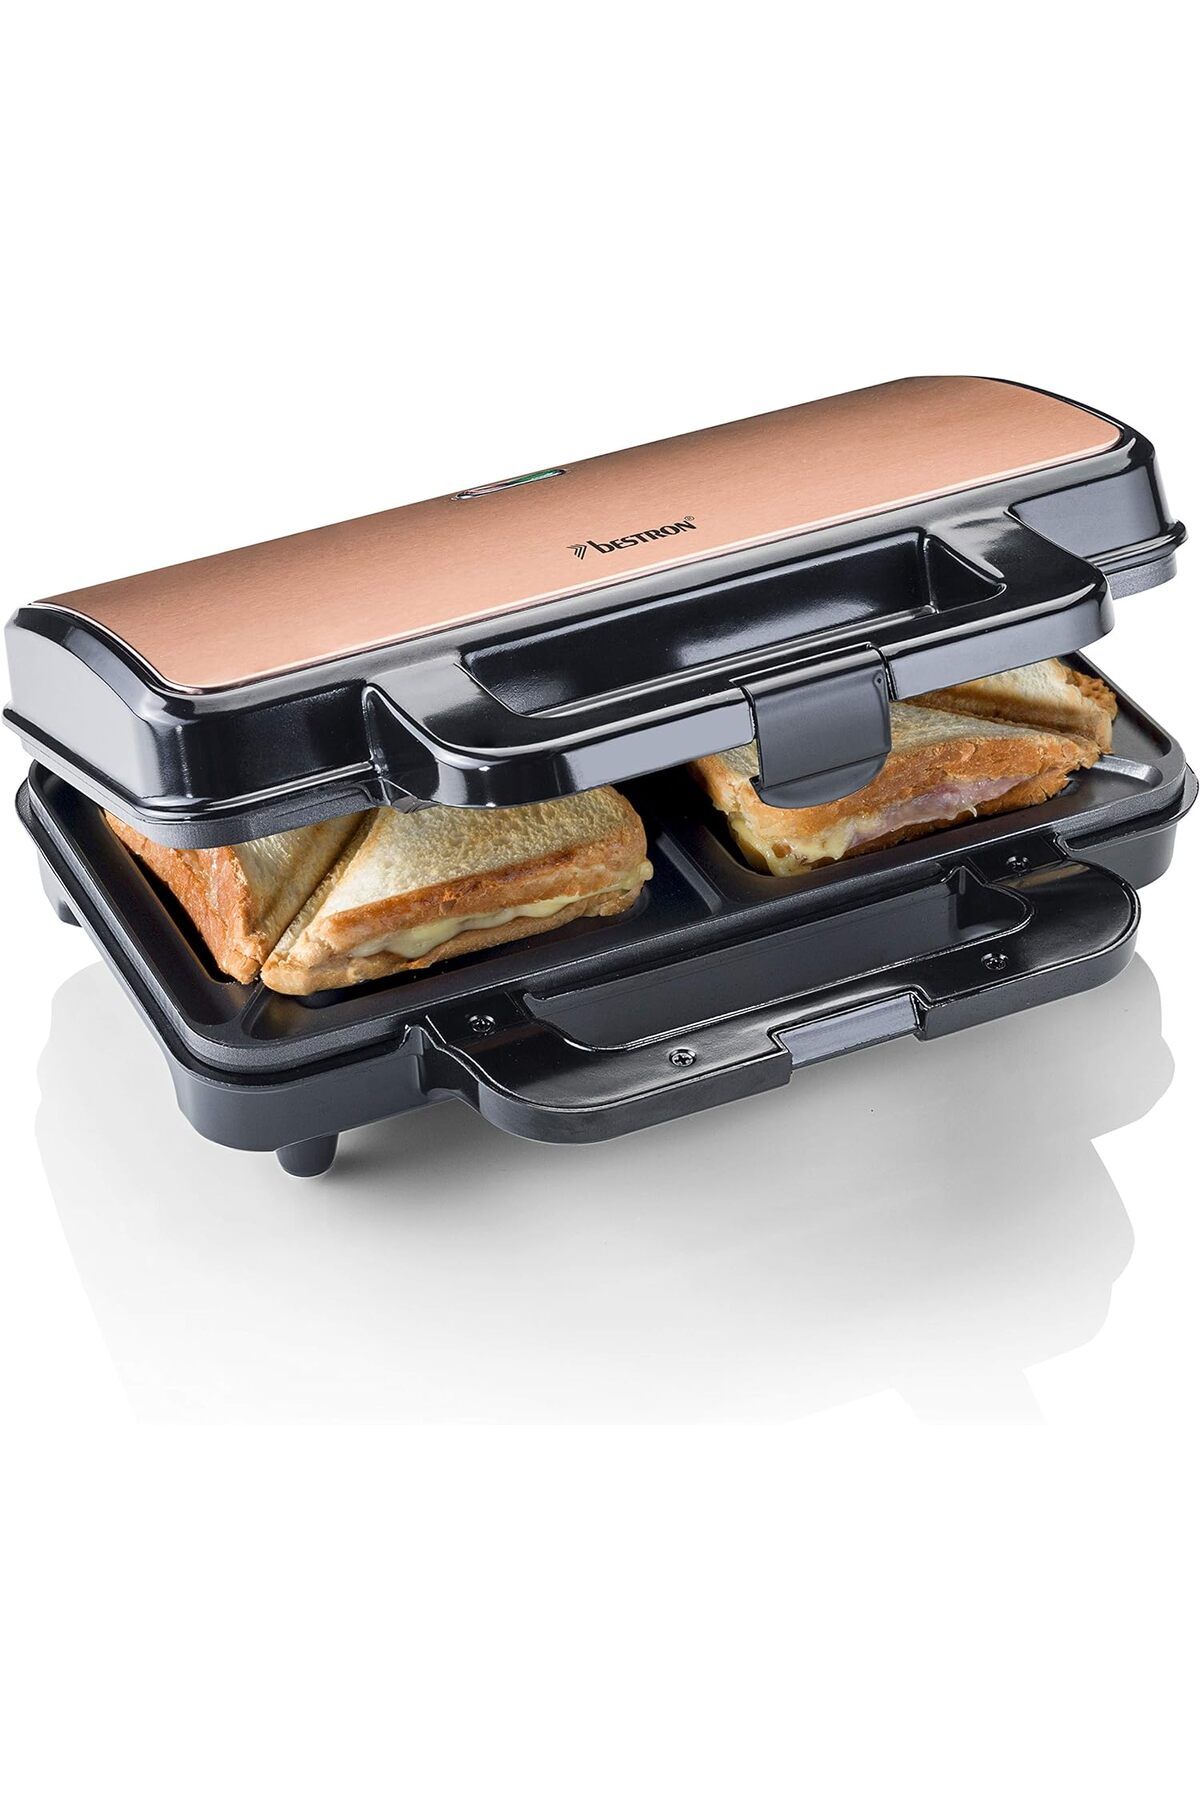 bestron XL Sandviç Makinesi, 2 Sandviç İçin Yapışmaz Sandviç Ekmek Kızartma Makinesi